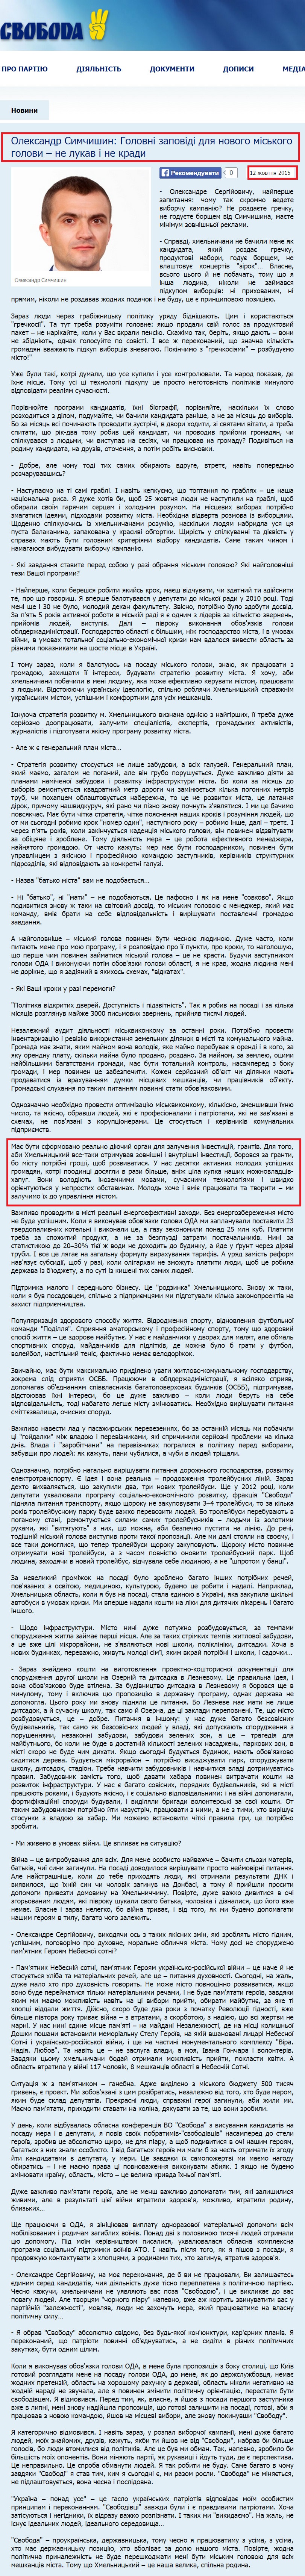 http://www.khmelnytskyy.svoboda.org.ua/diyalnist/komentari/060005/